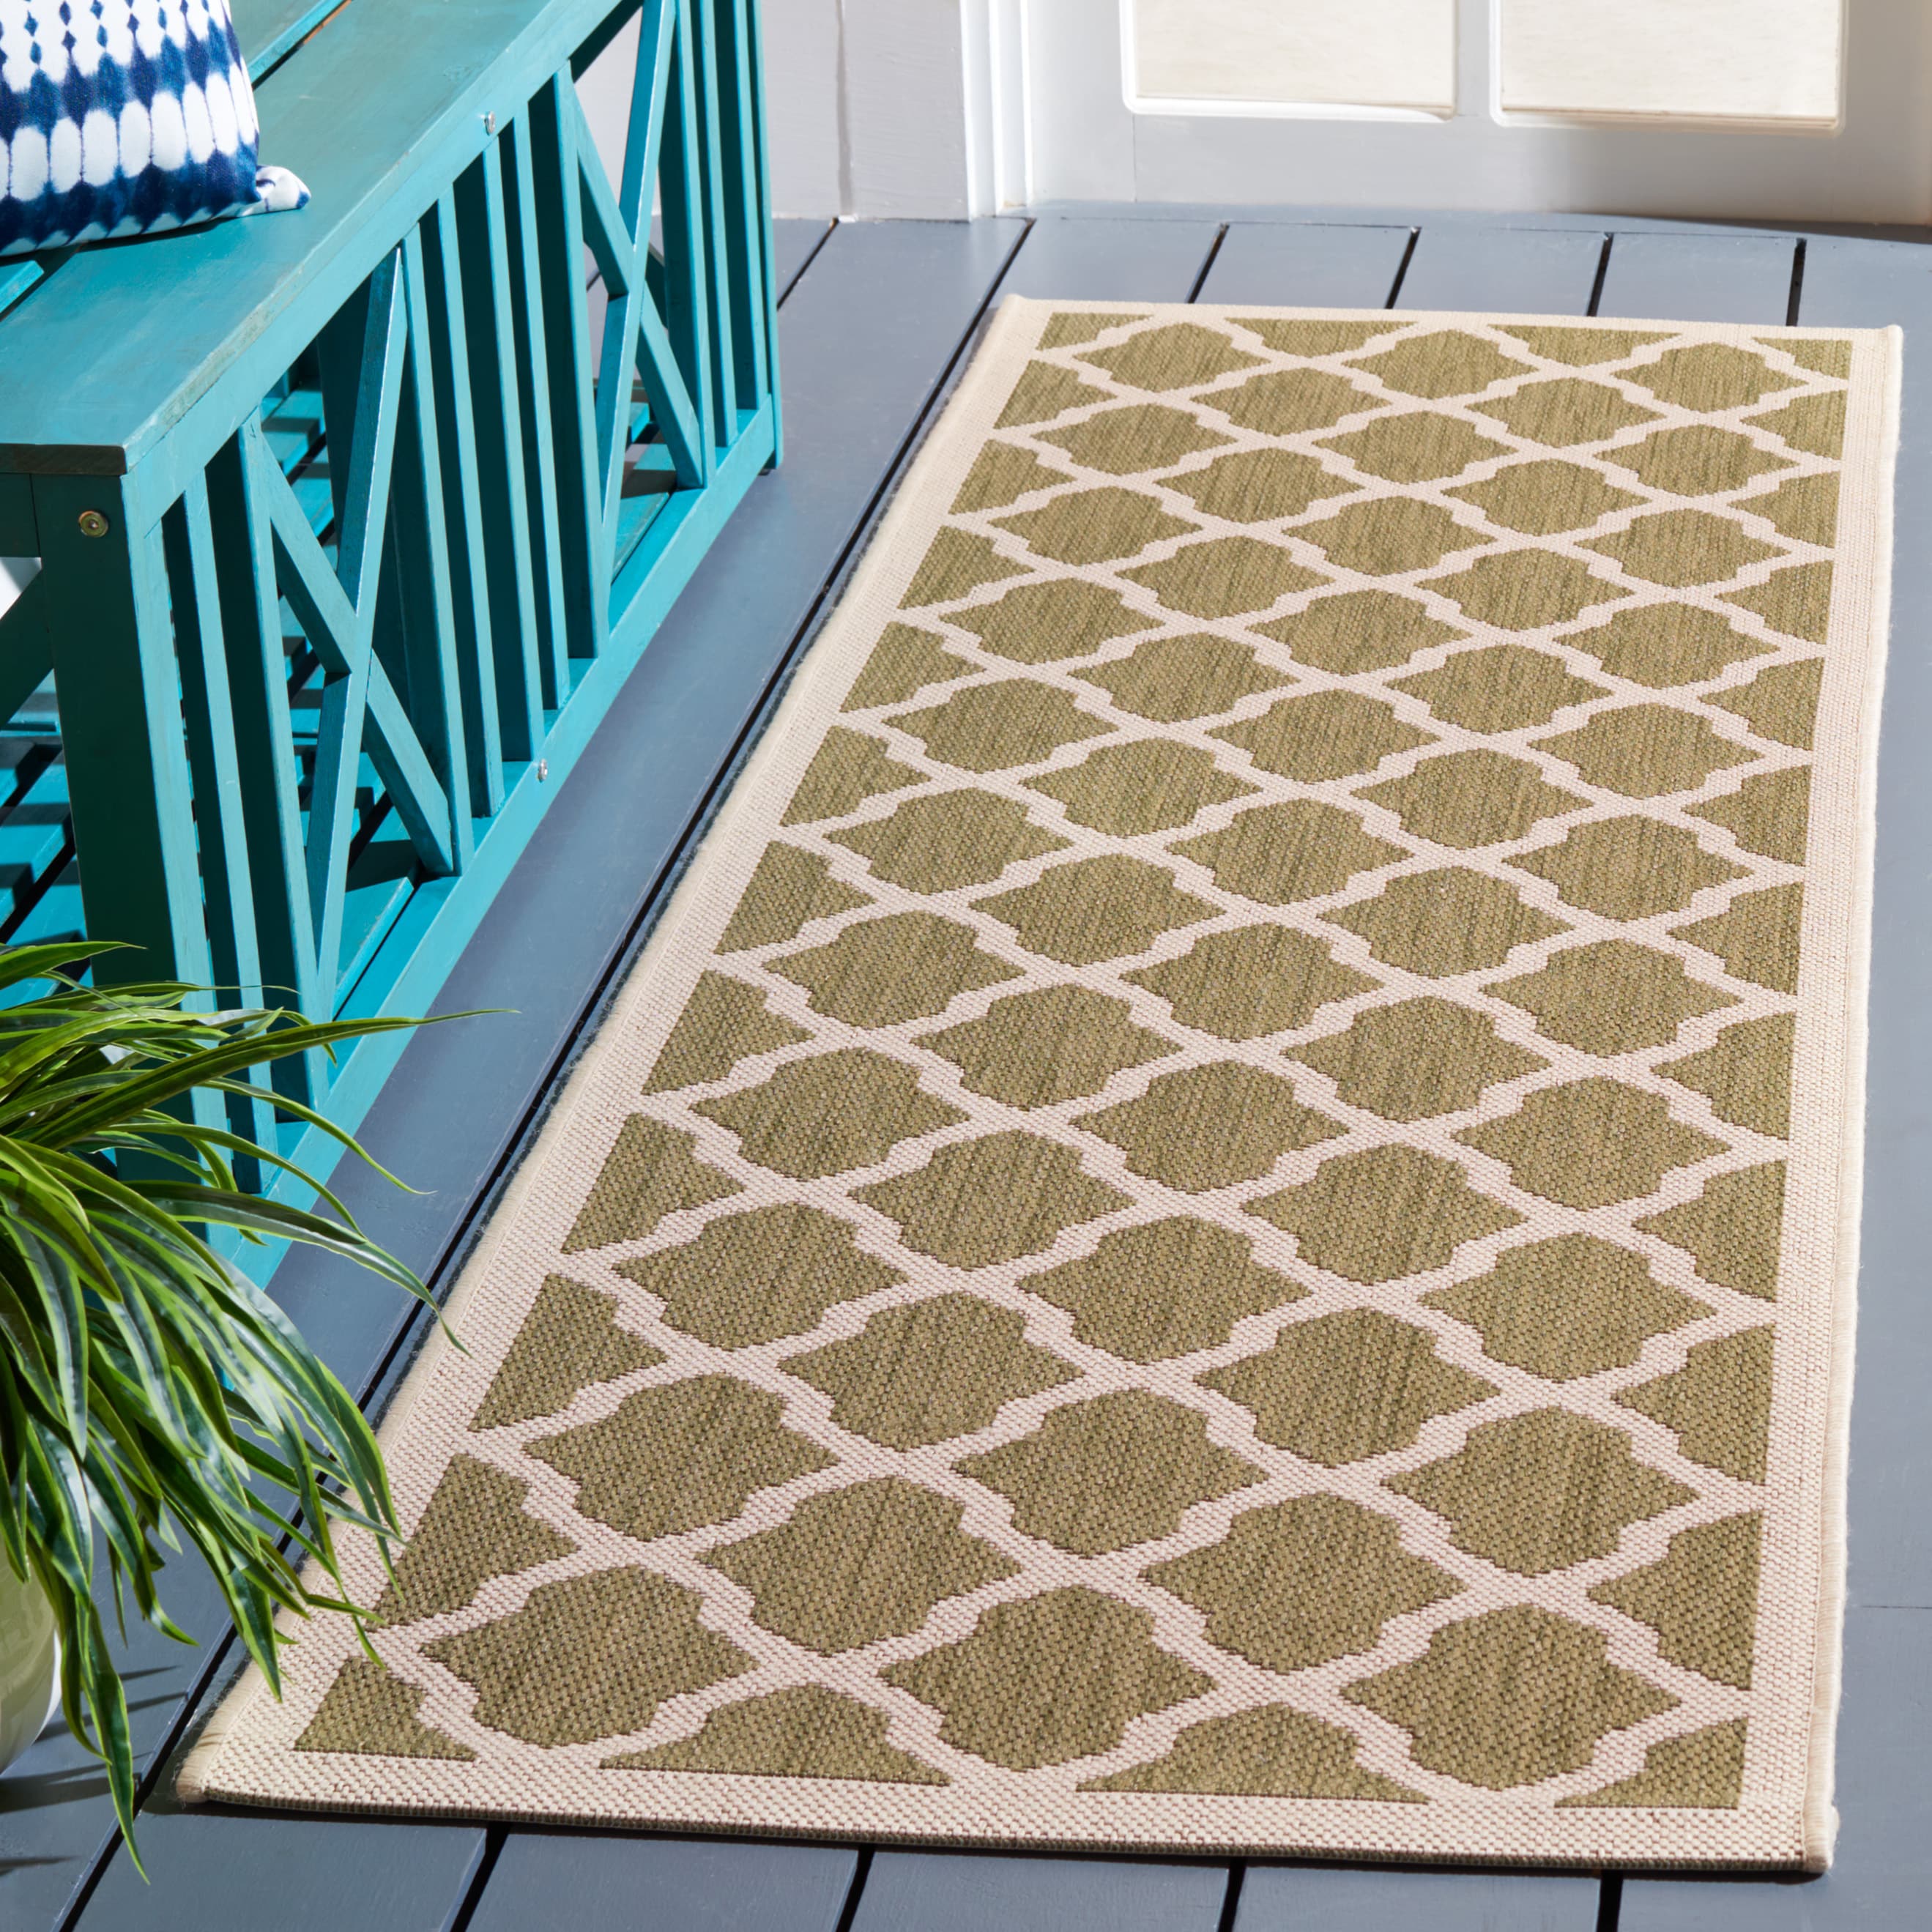 Skid-Resistant Carpet Runner Olive Green 27 in. x 14 ft.